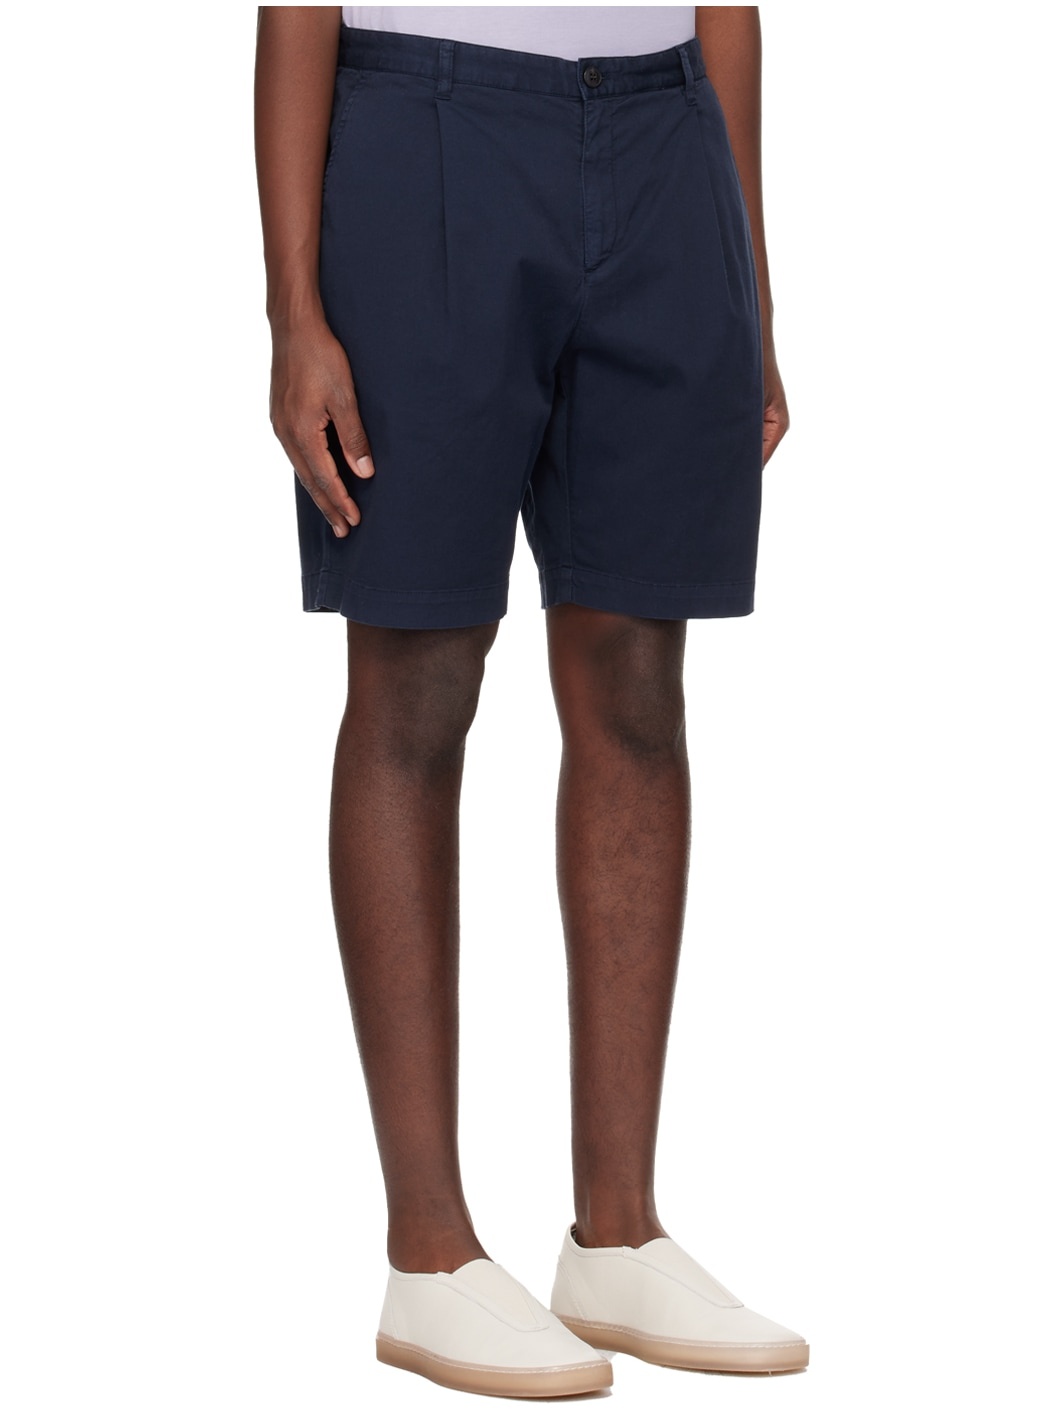 Navy Pleated Shorts - 2